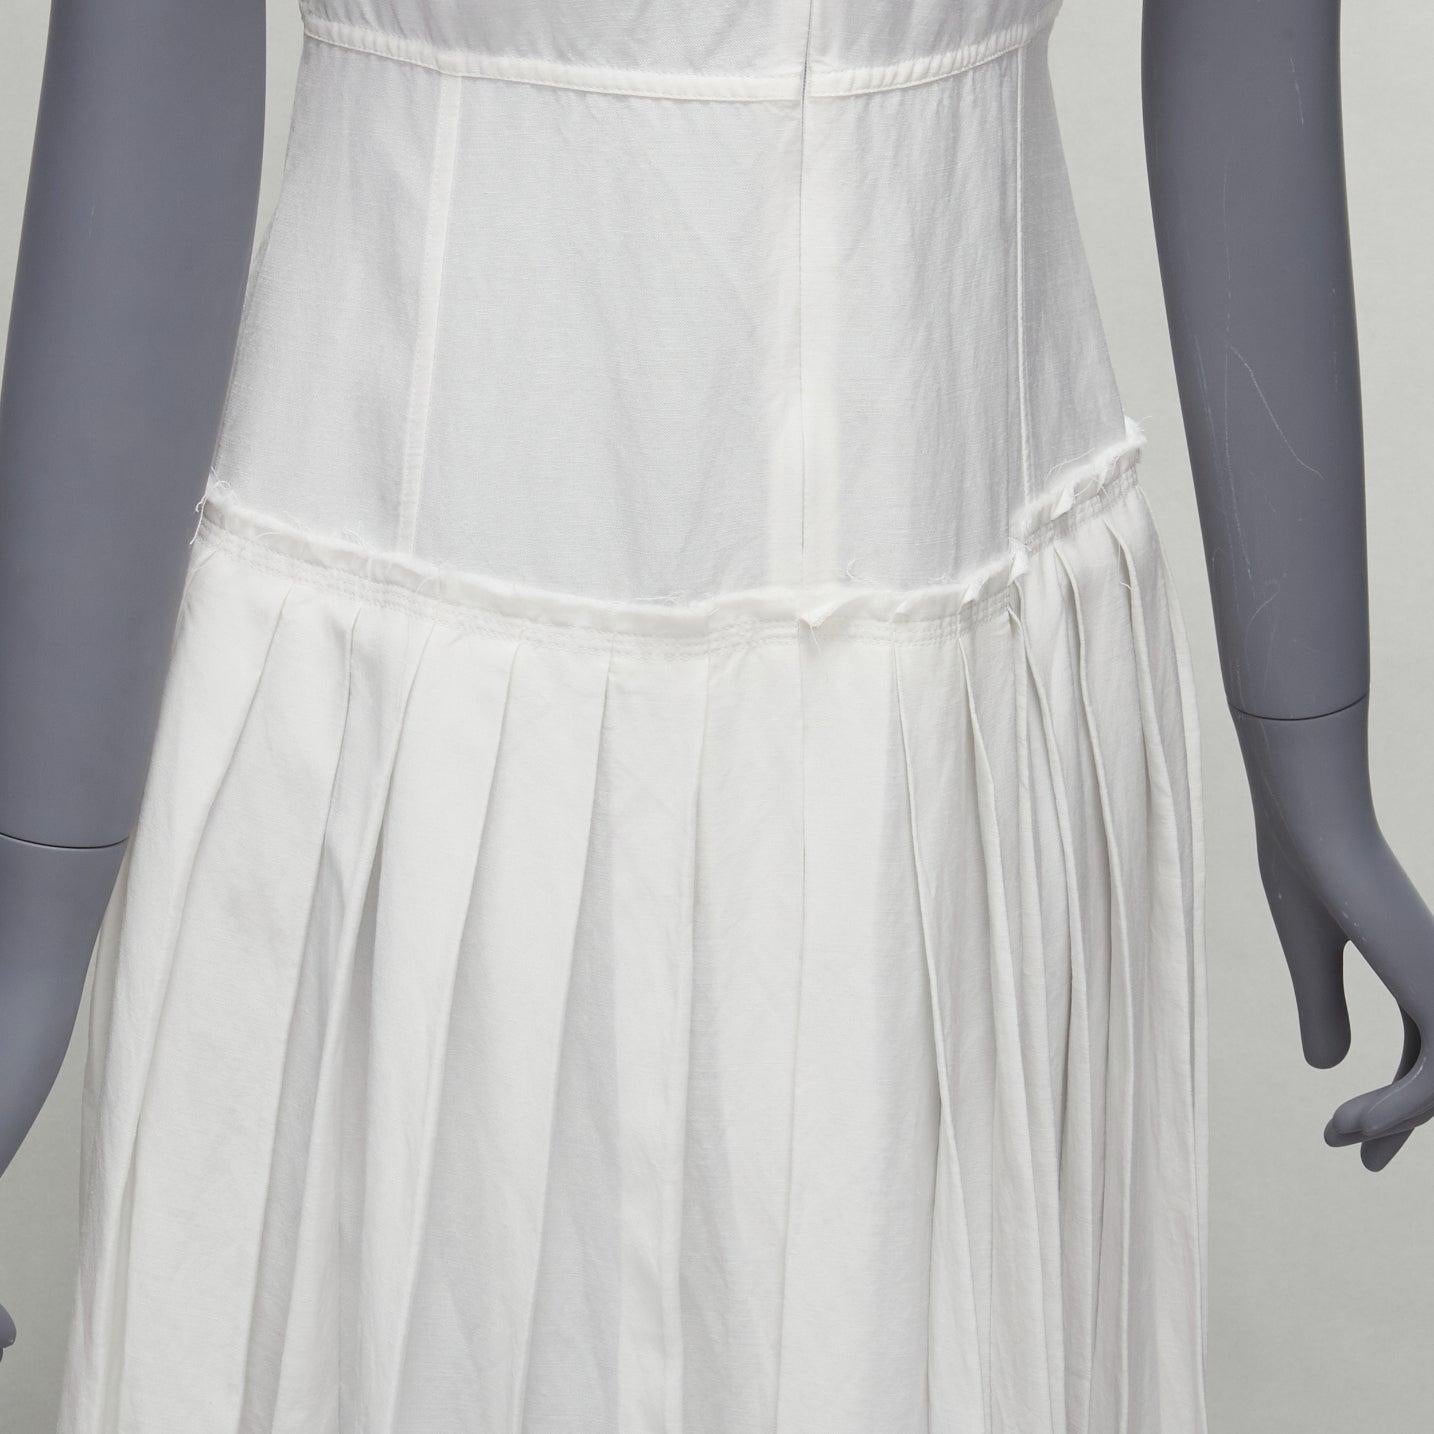 OLD CELINE Phoebe Philo 2017 Runway Yves Klein  body print white dress FR34  1